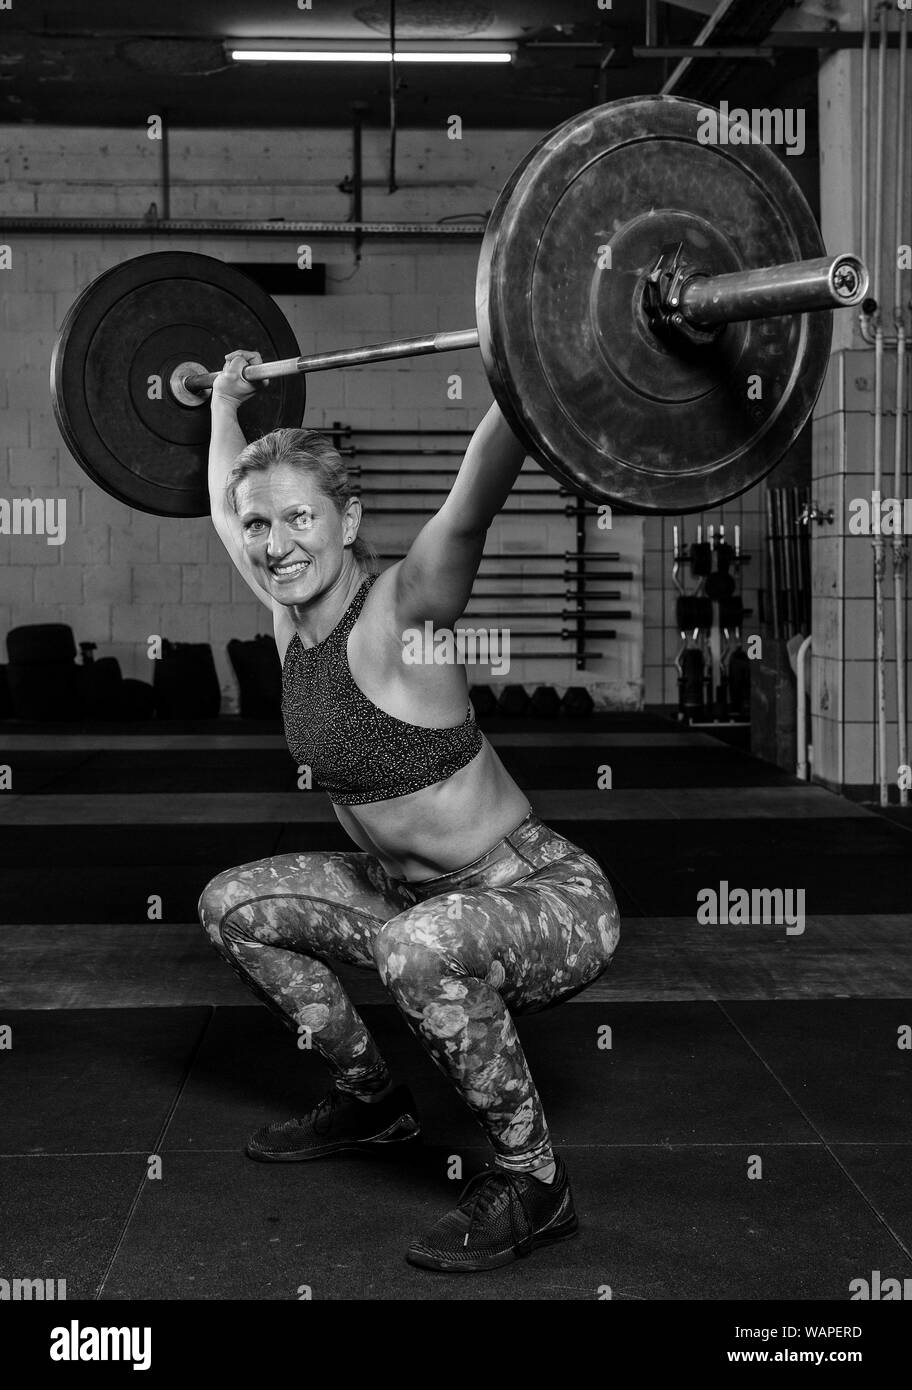 Un bel centro di età atleta femminile con Sixpack sta facendo overhead squat con il barbell. Funzionale e fitness sollevamento pesi allenamento in palestra. Foto Stock